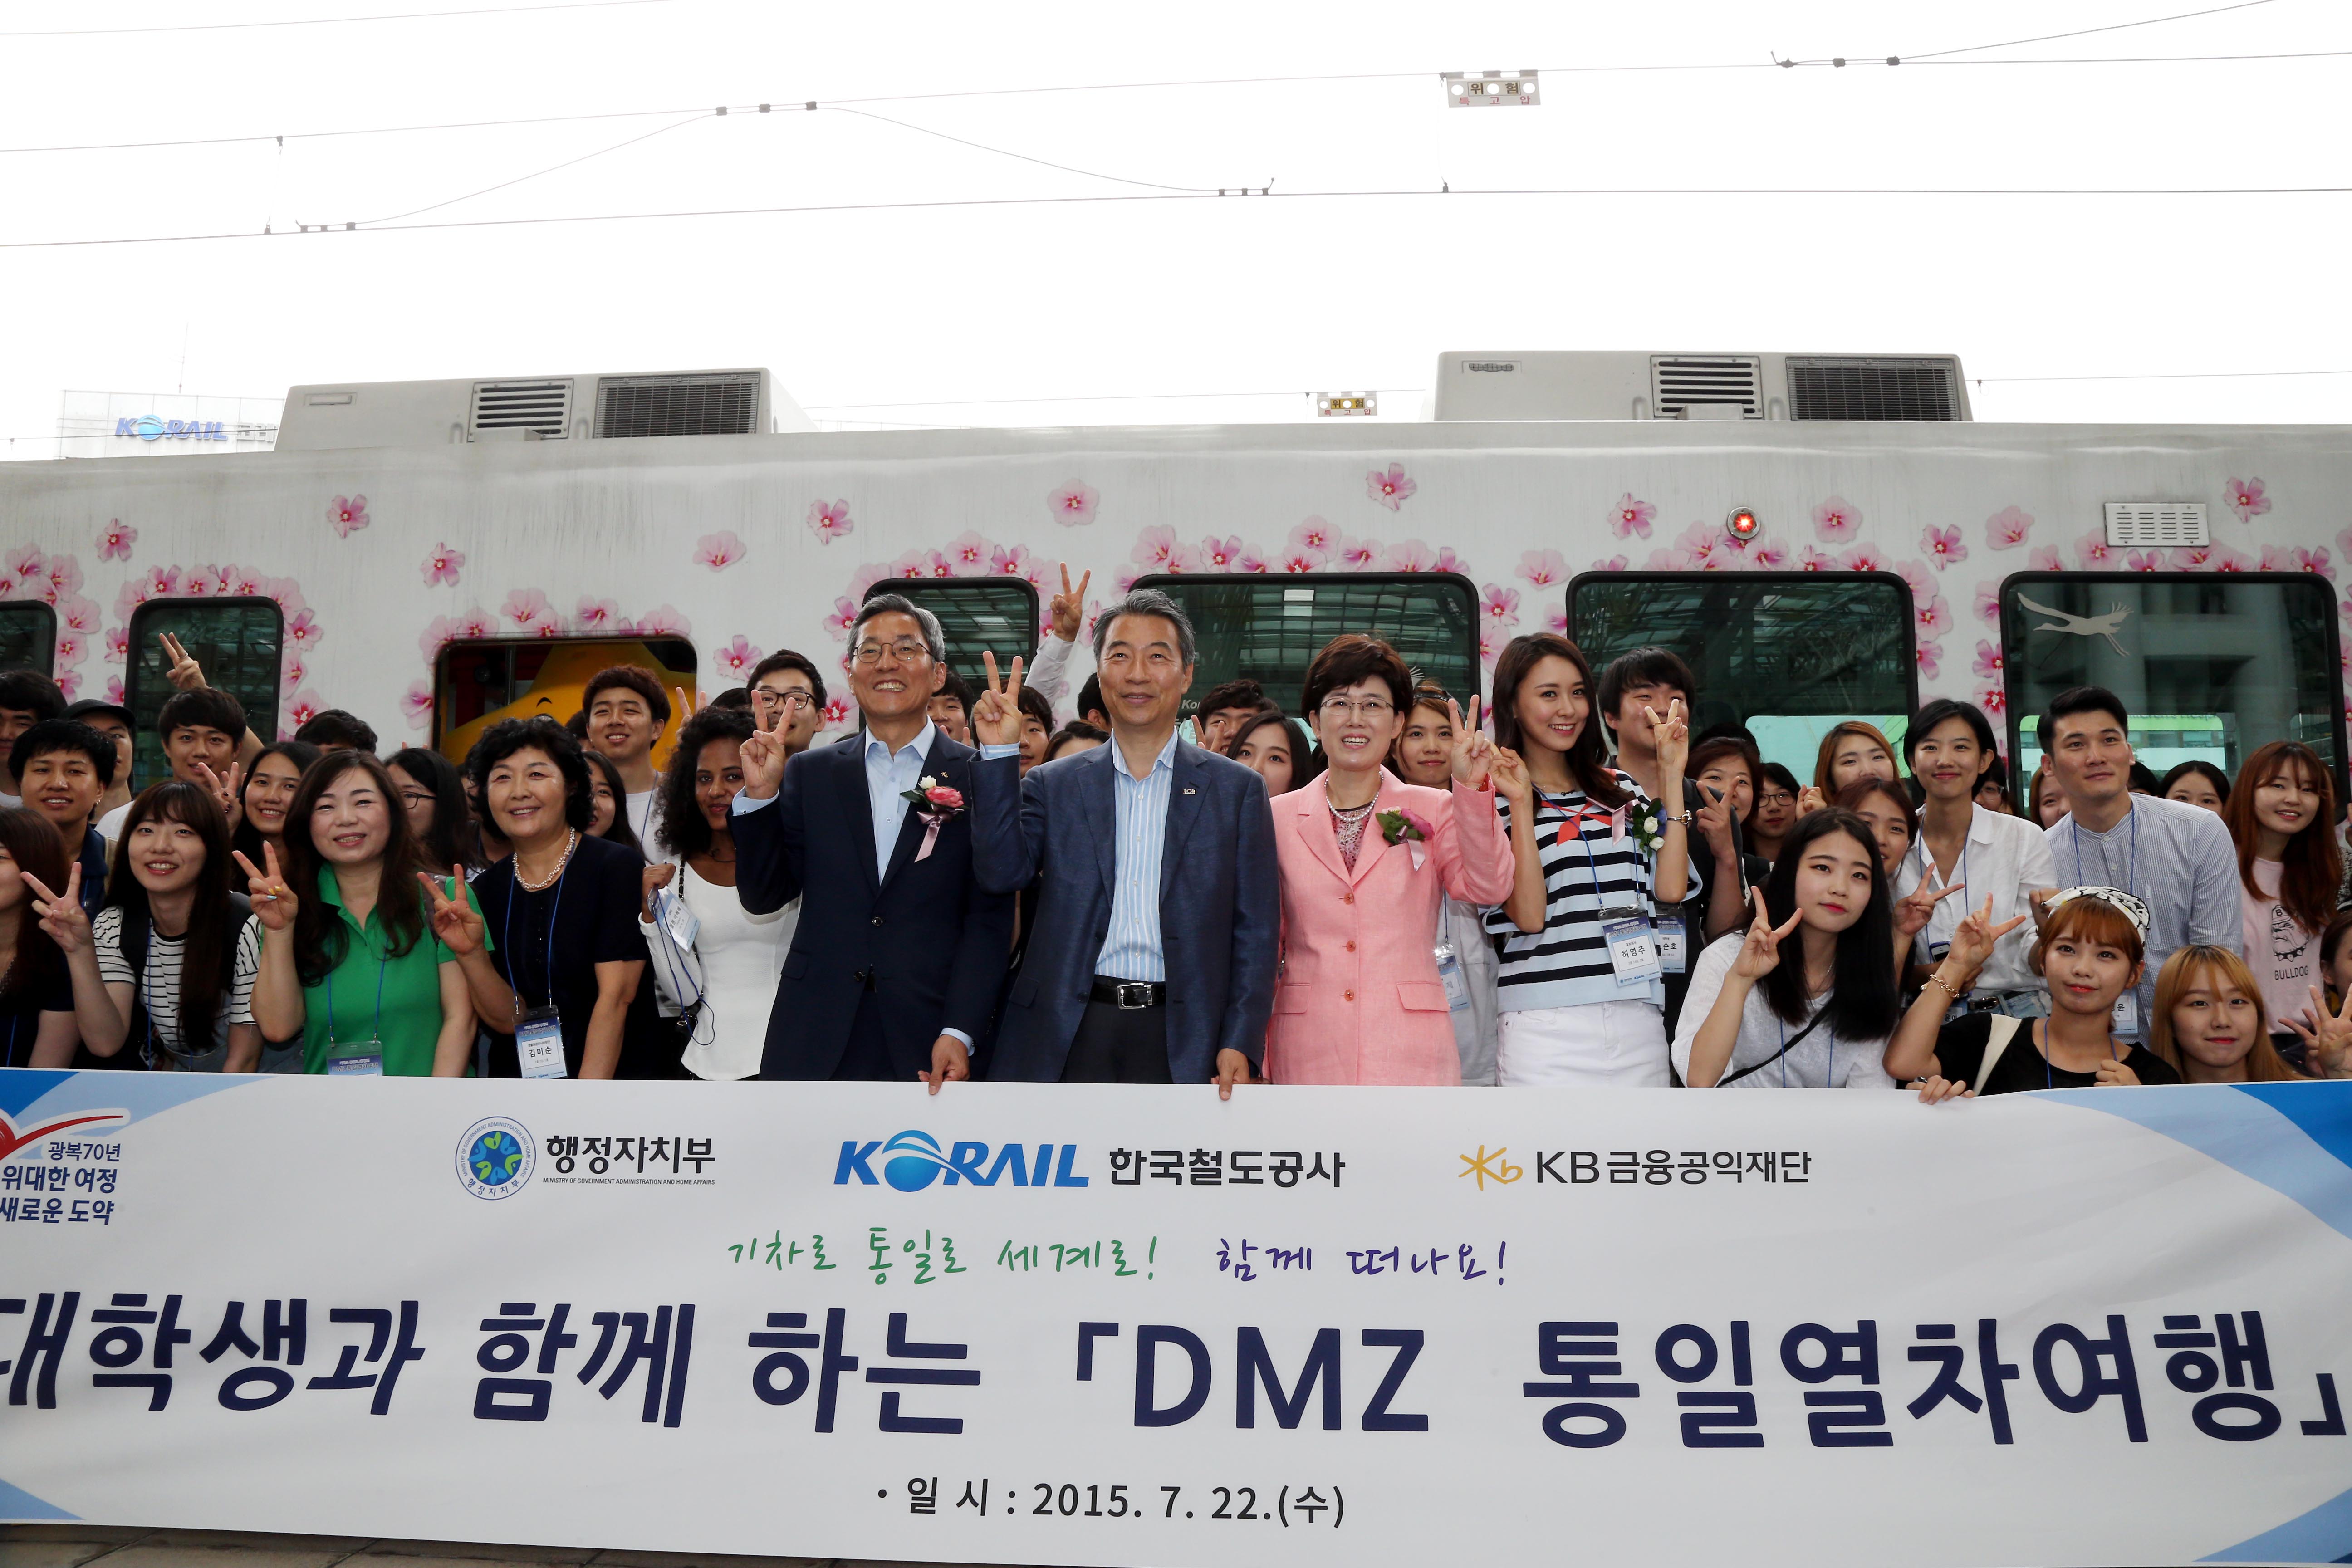 행정자치부, 광복 70주년 대학생들과 함께하는 'DMZ 통일열차 여행'